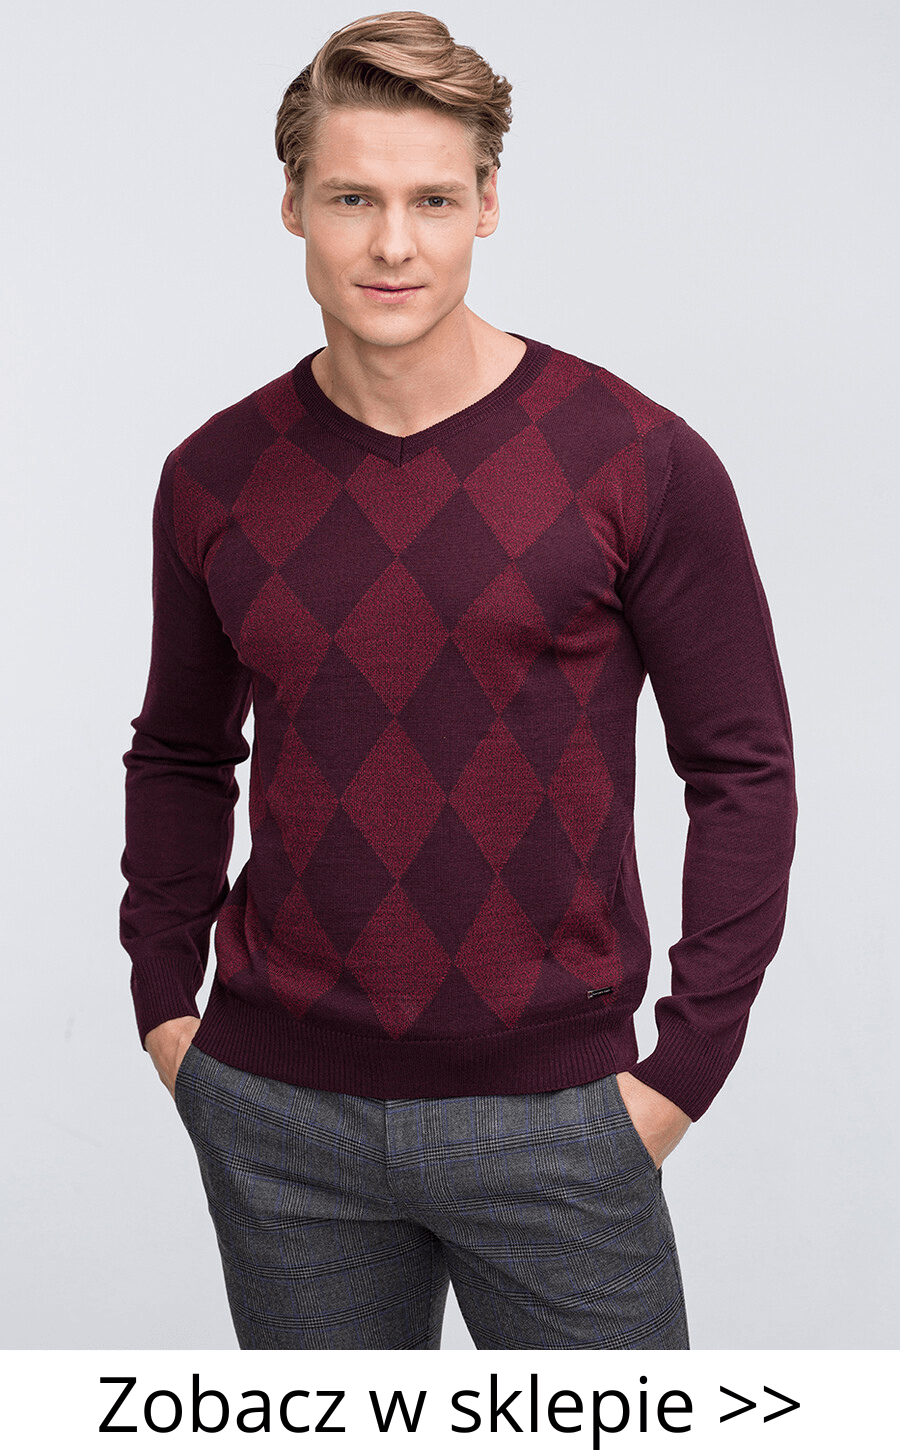 bordowy sweter w romby